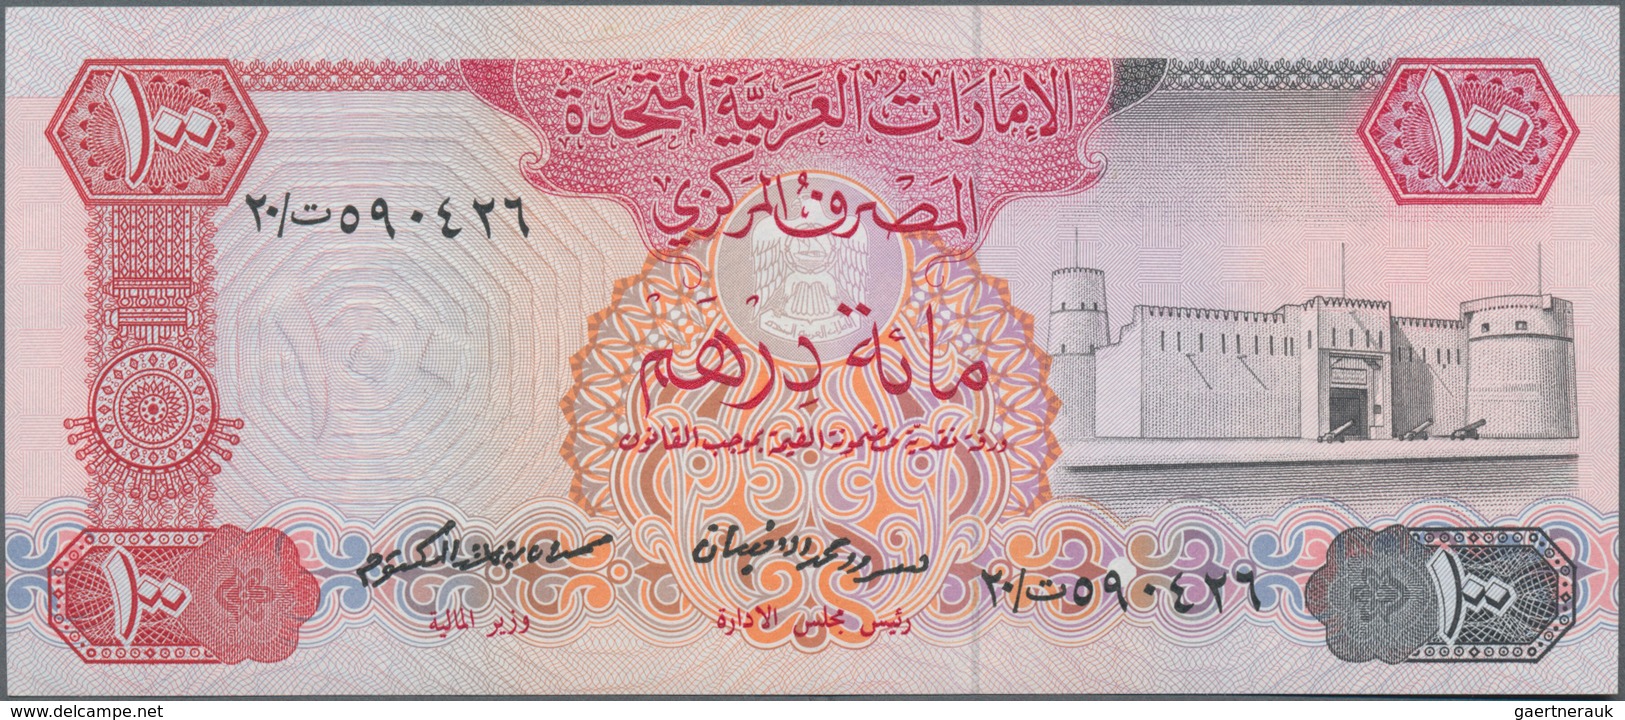 United Arab Emirates / Vereinigte Arabische Emirate: United Arab Emirates Central Bank 100 Dirhams N - United Arab Emirates